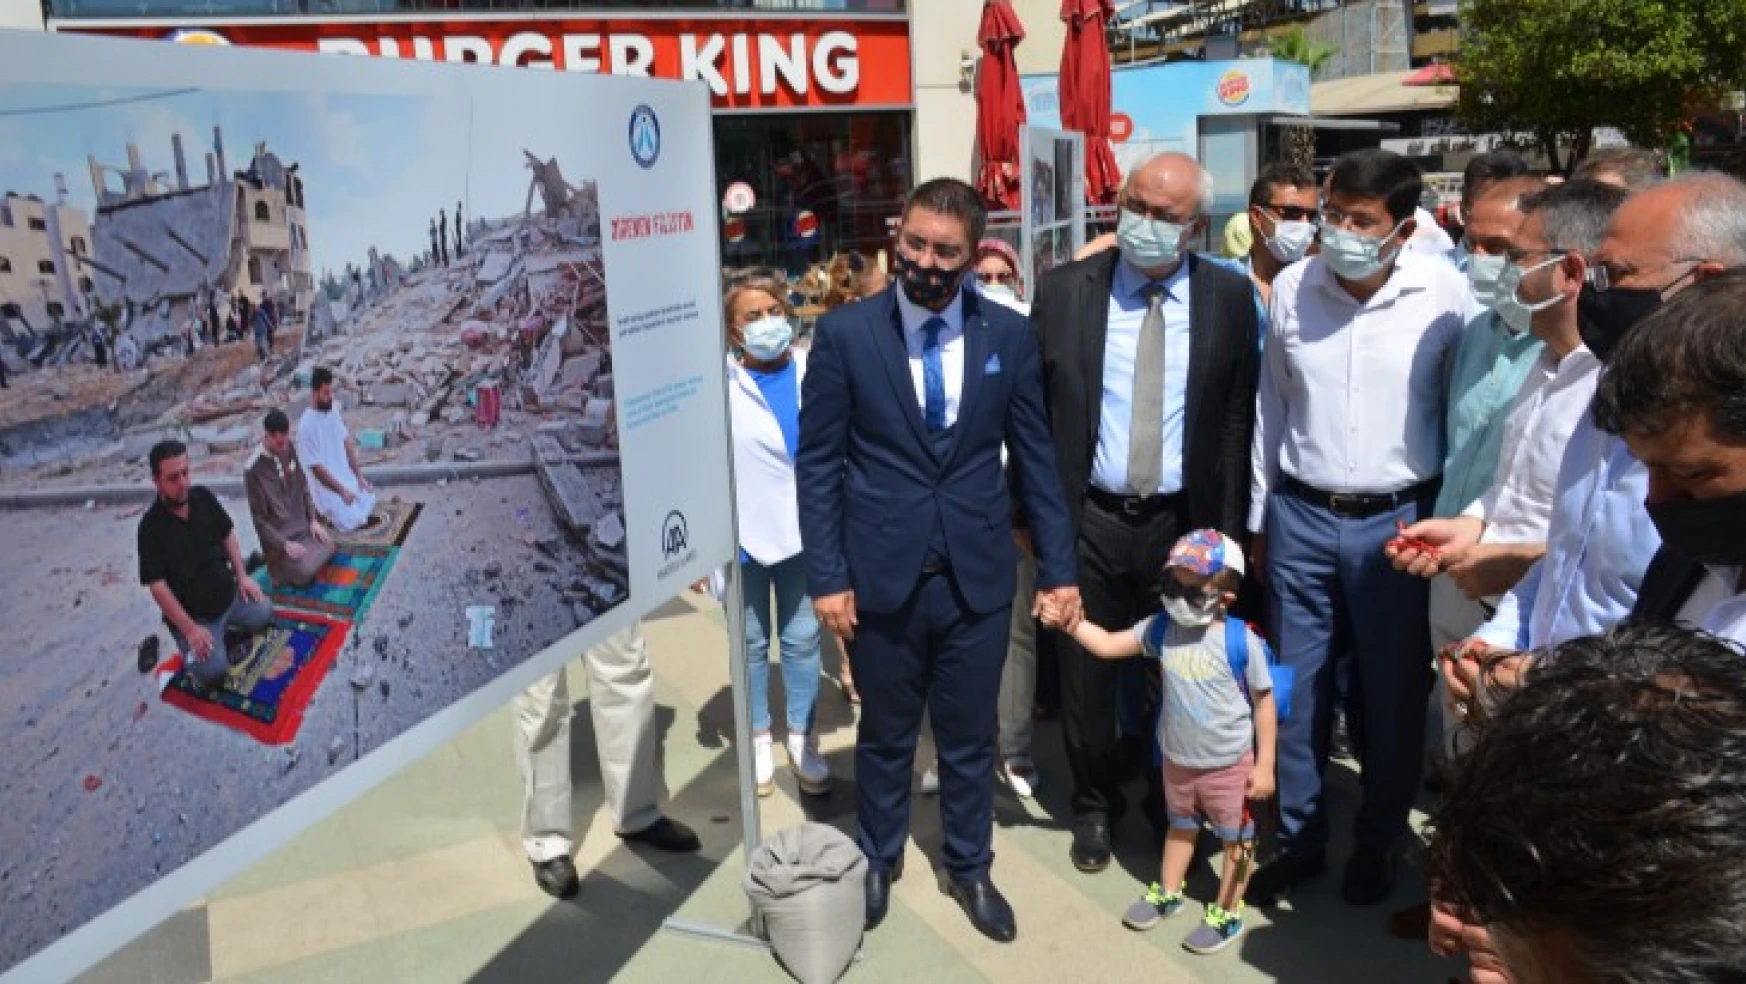 Nazilli'de 'Direnen Filistin' sergisi açıldı